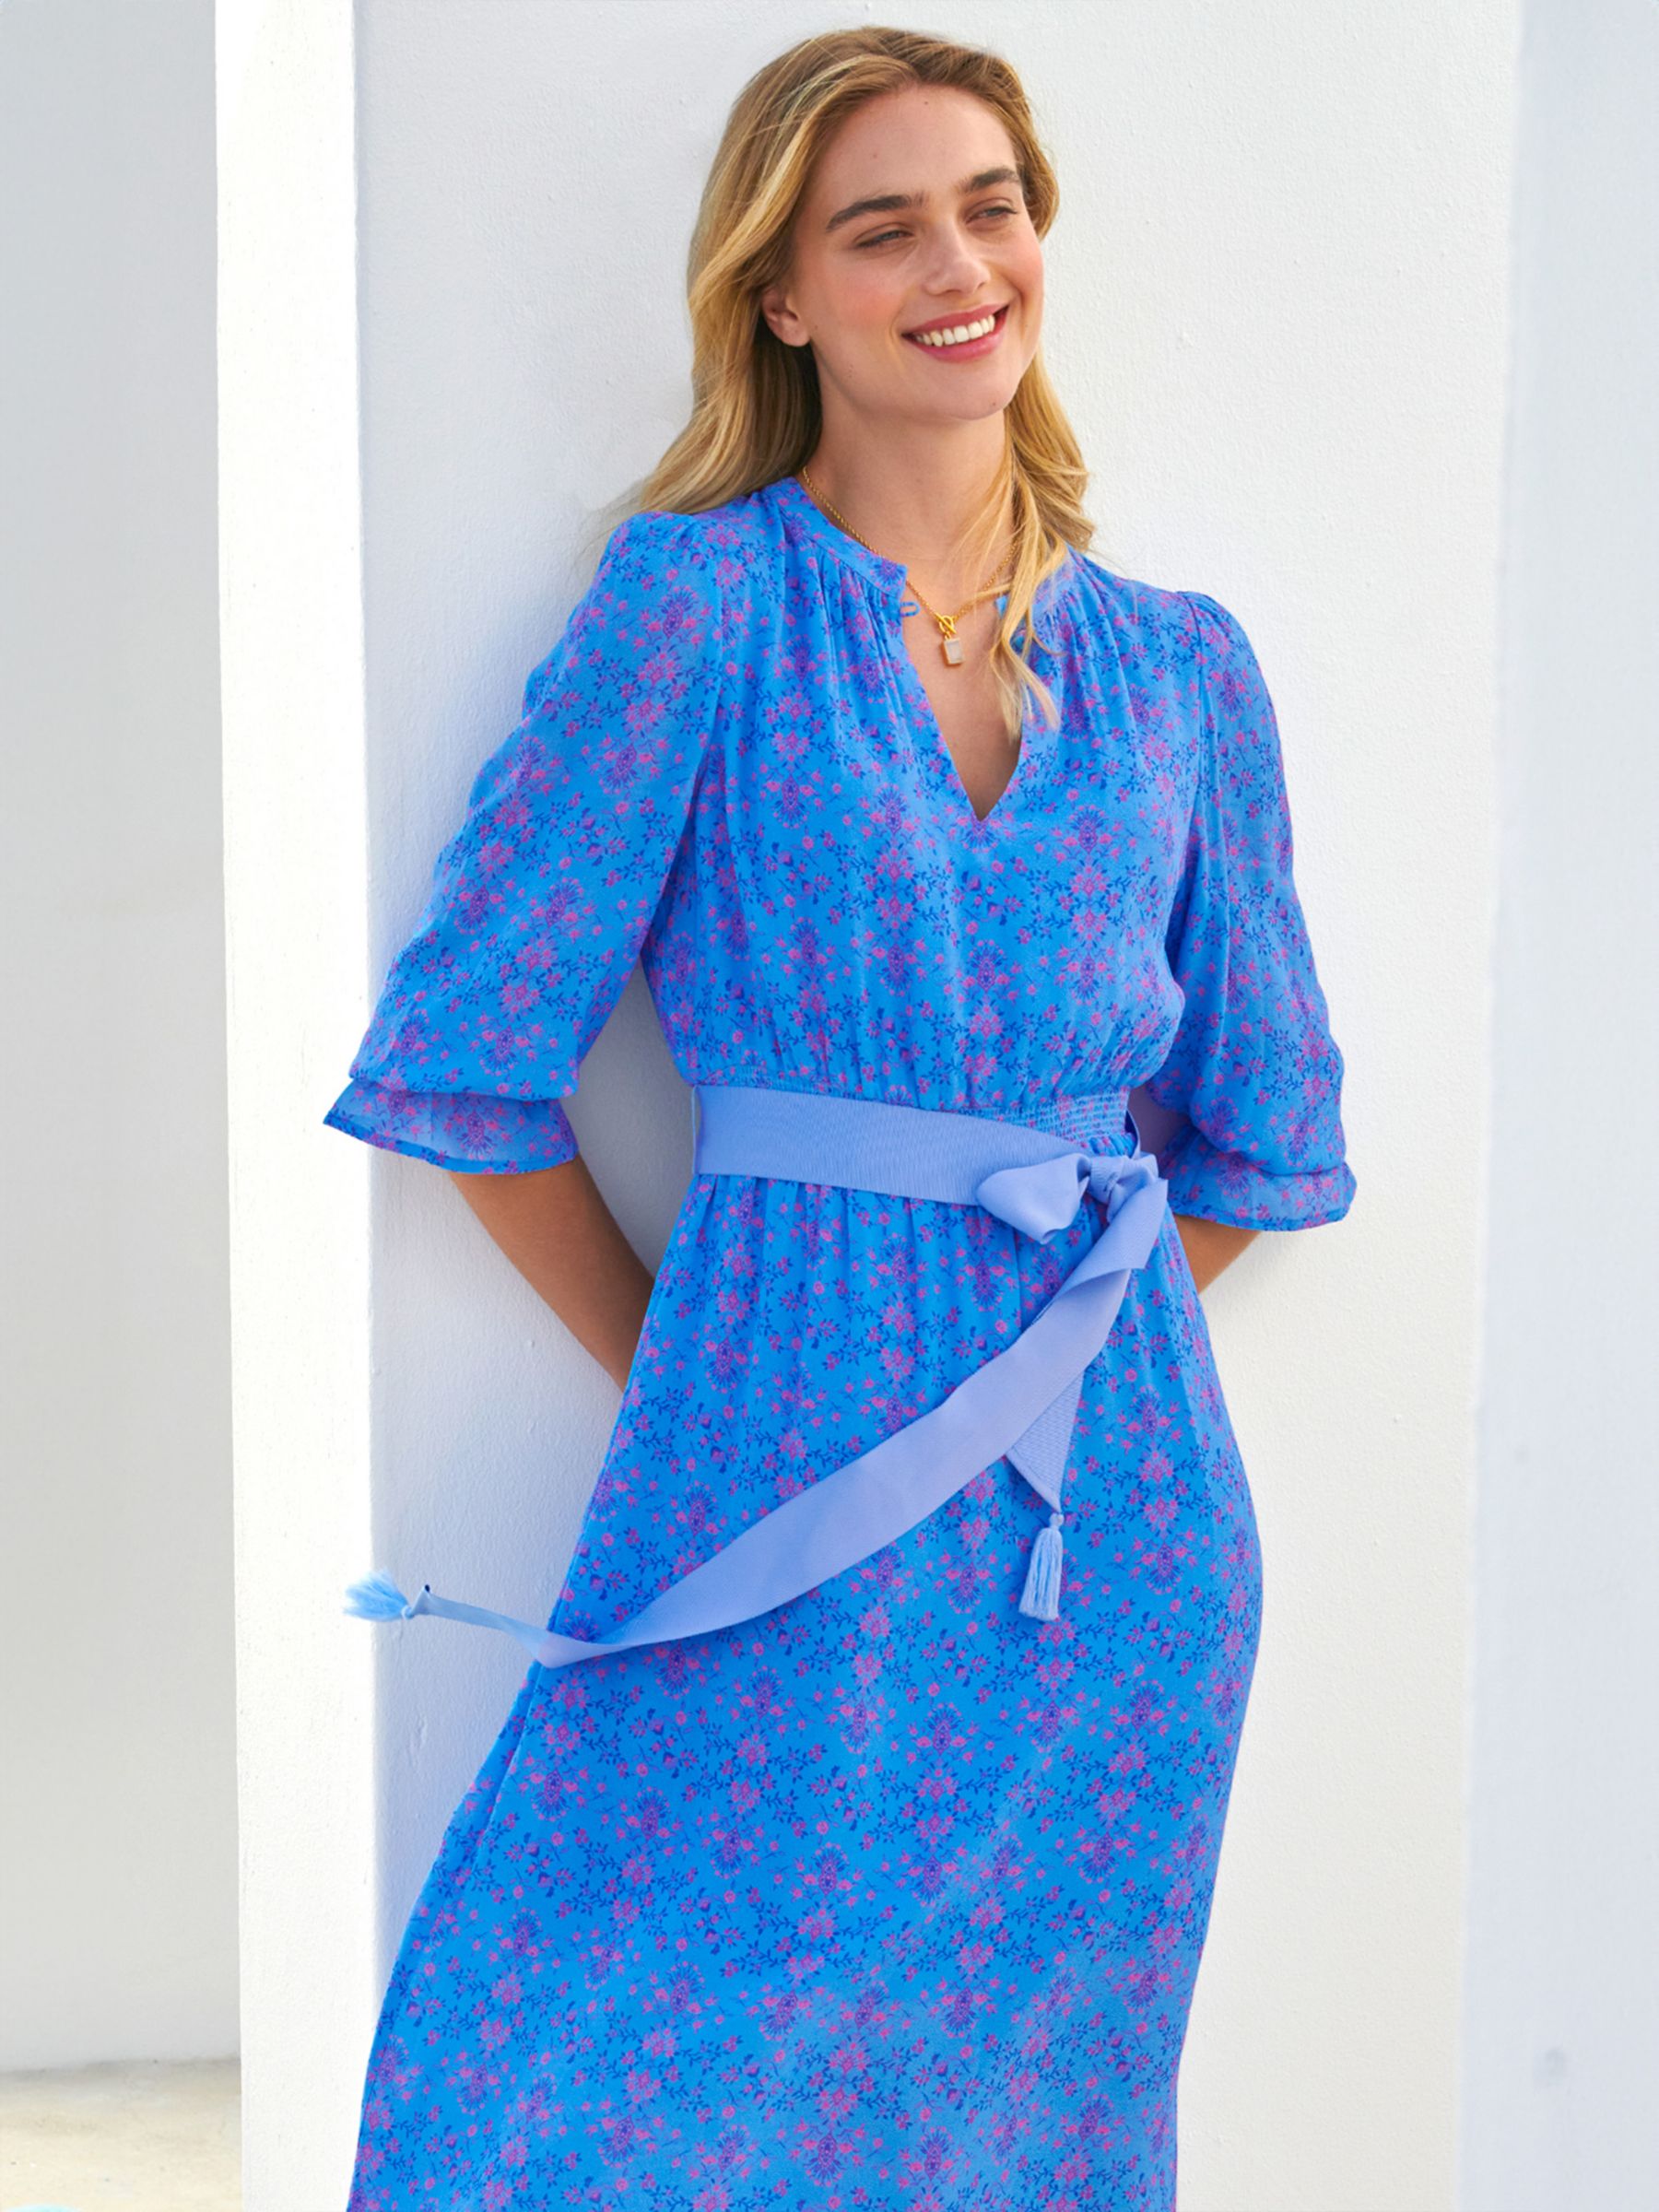 Aspiga Maeve Floral Print Contrast Belt Maxi Dress, Blue/Multi, S